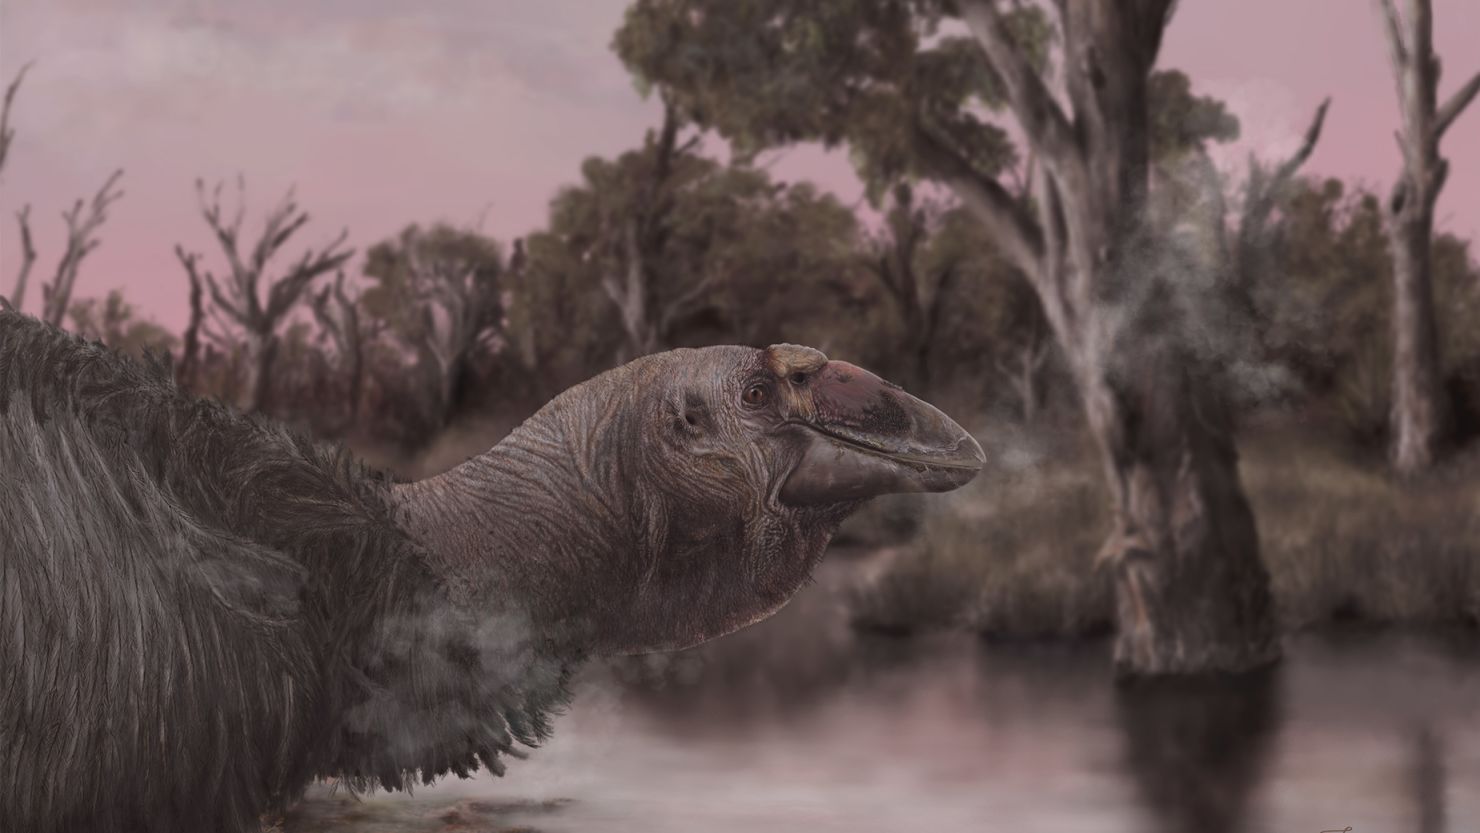 Uma reconstrução artística da vida mostra Genyornis newtoni, o último dos mihirungs, à beira da água.  Estas aves gigantes e incapazes de voar teriam vagado pelas florestas e pastagens da Austrália há 50 mil anos.